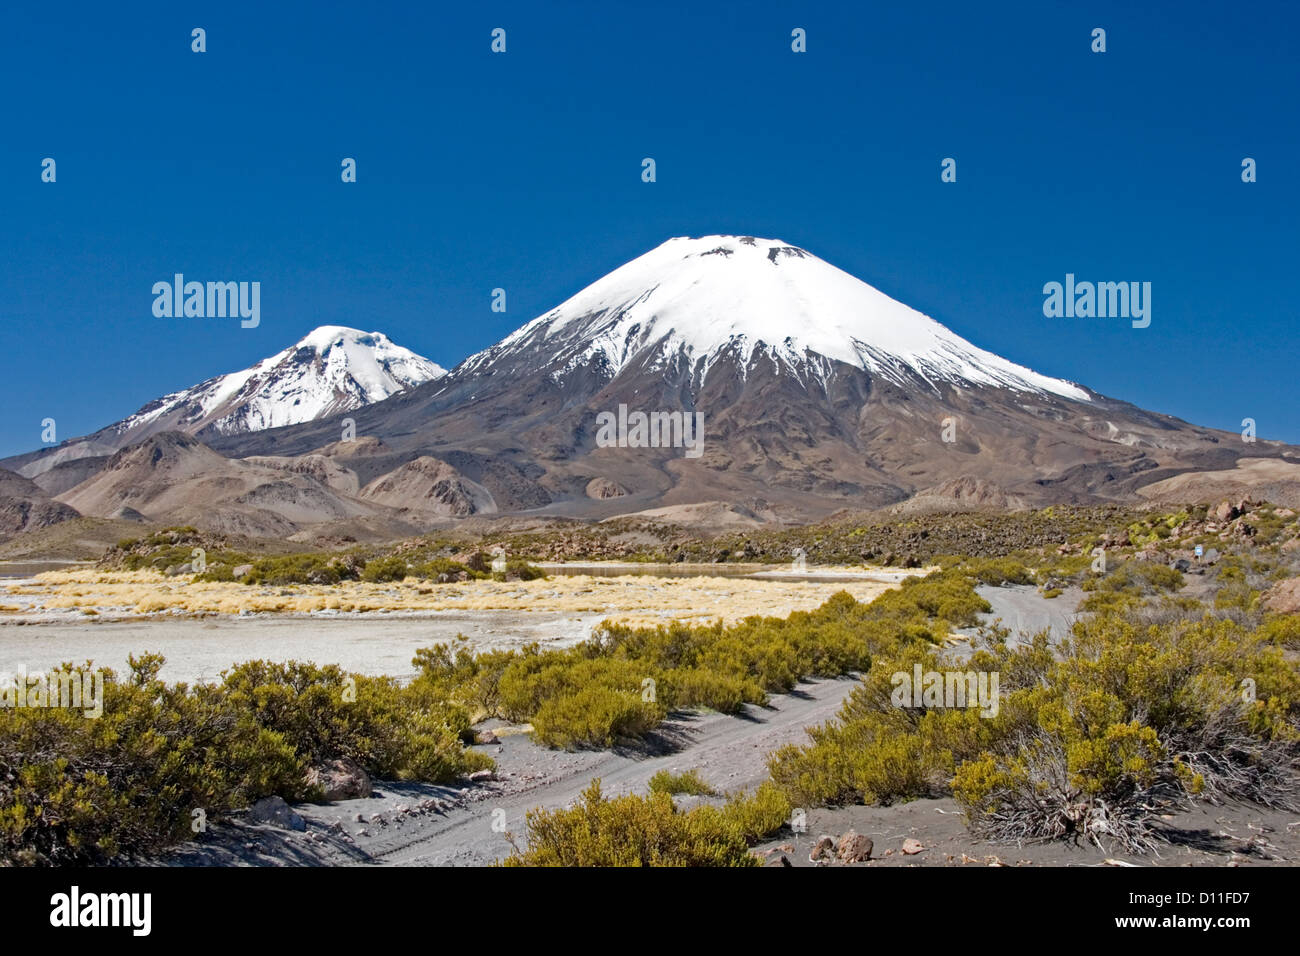 La voie menant à travers le paysage vers les volcans enneigés Parinacota et Pomarape près de Putre au Chili Amérique du Sud Banque D'Images